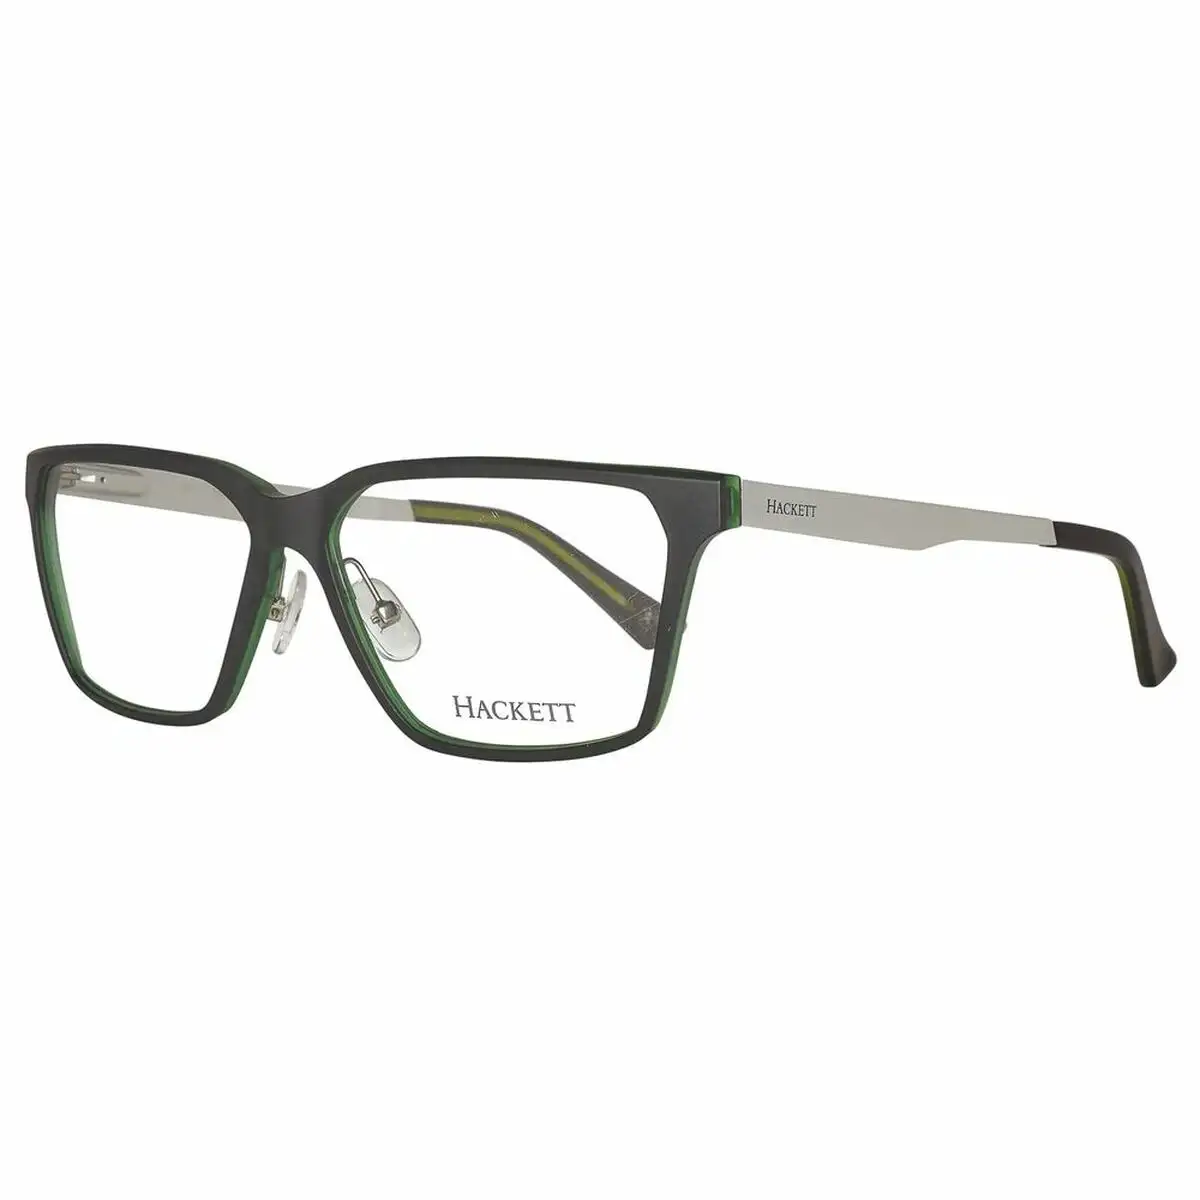 Monture de lunettes unisexe hackett london hek115 56074_3230. DIAYTAR SENEGAL - Votre Destination pour un Shopping Réfléchi. Découvrez notre gamme variée et choisissez des produits qui correspondent à vos valeurs et à votre style de vie.